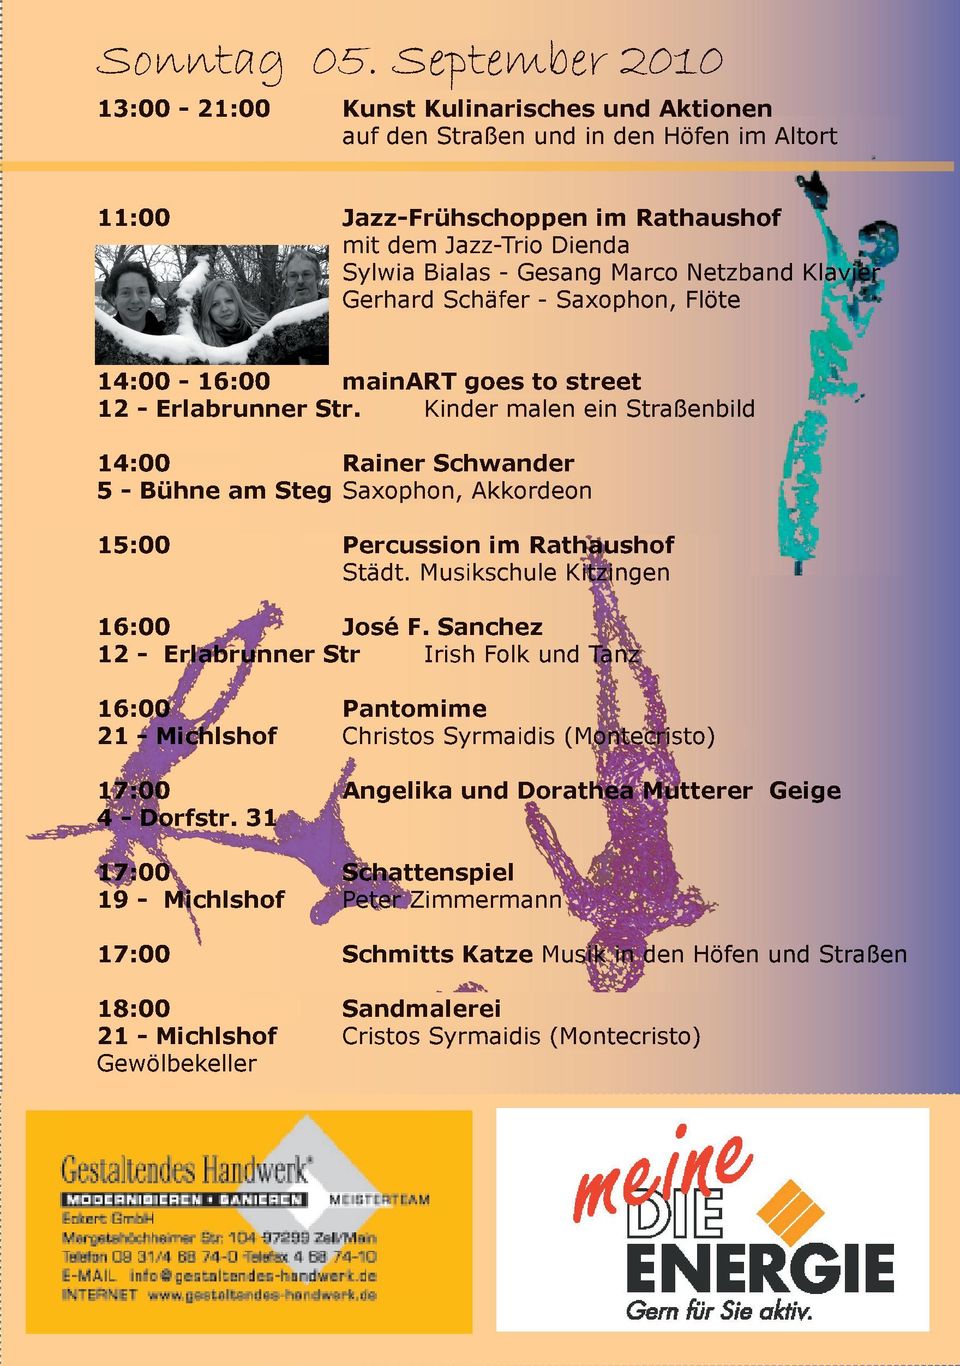 Netzband Klavier Gerhard Schäfer - Saxophon, Flöte 14:00 - mainart goes to street 12 - Erlabrunner Str.